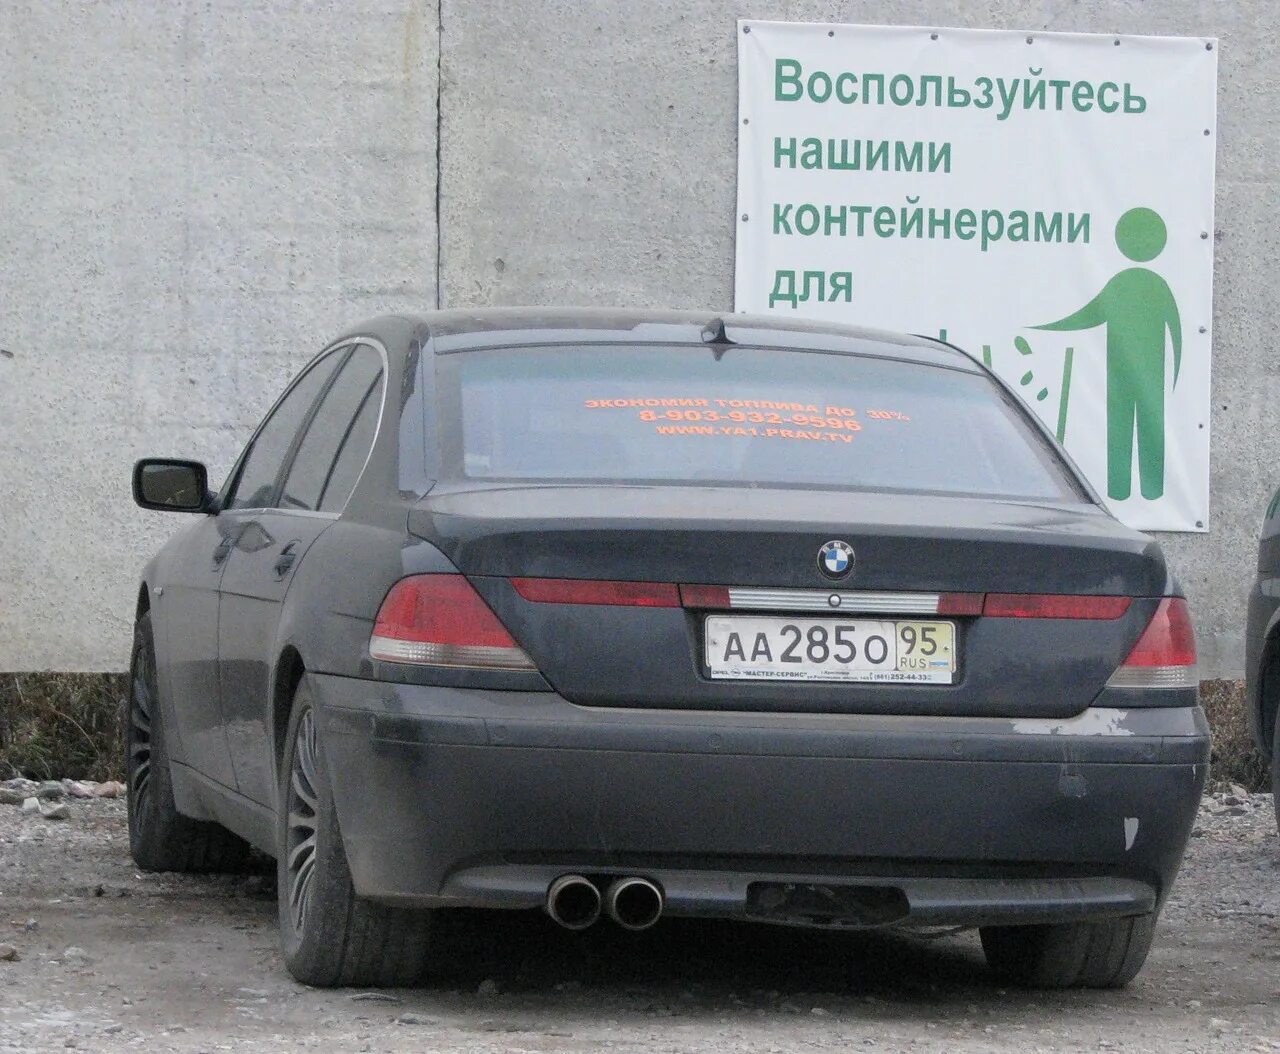 Код региона чечня. Автомобильные номера Чечни. Чеченские номера авто. Номерные знаки Чечни. Чечня регион на номерах.